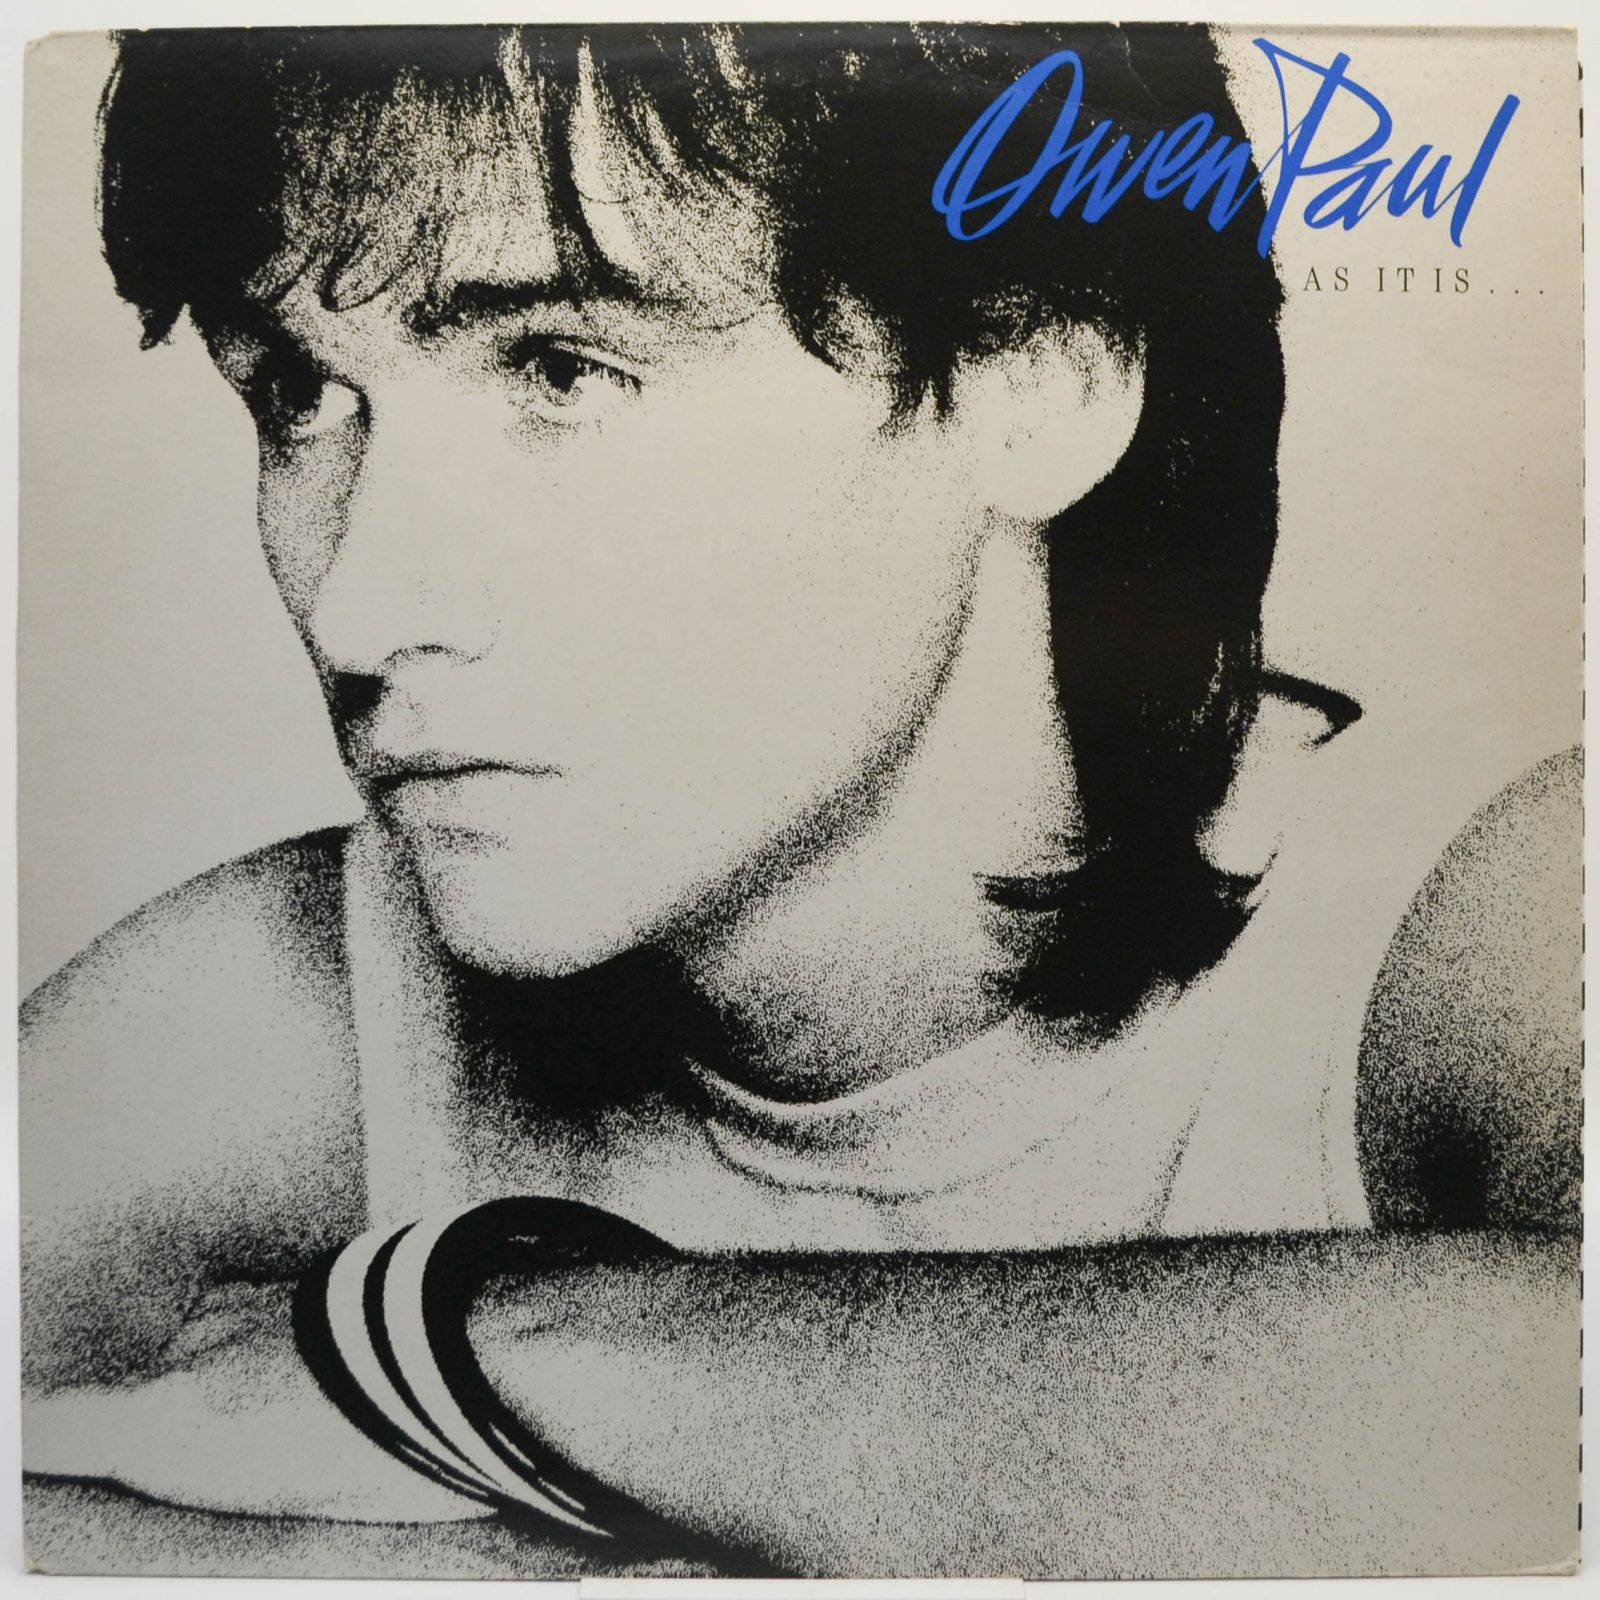 Owen Paul — As It Is ..., 1986